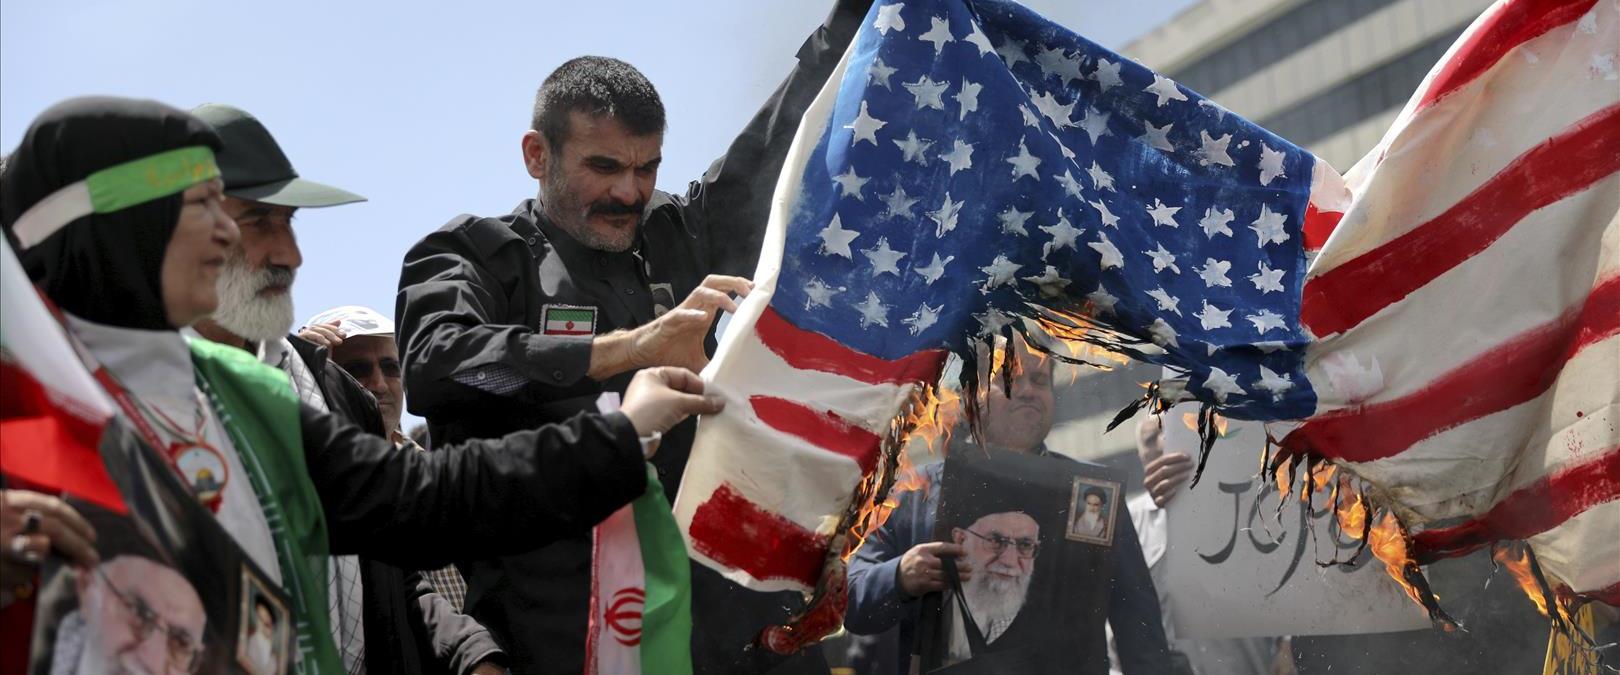 שורפים דגלי ארצות הברית באיראן